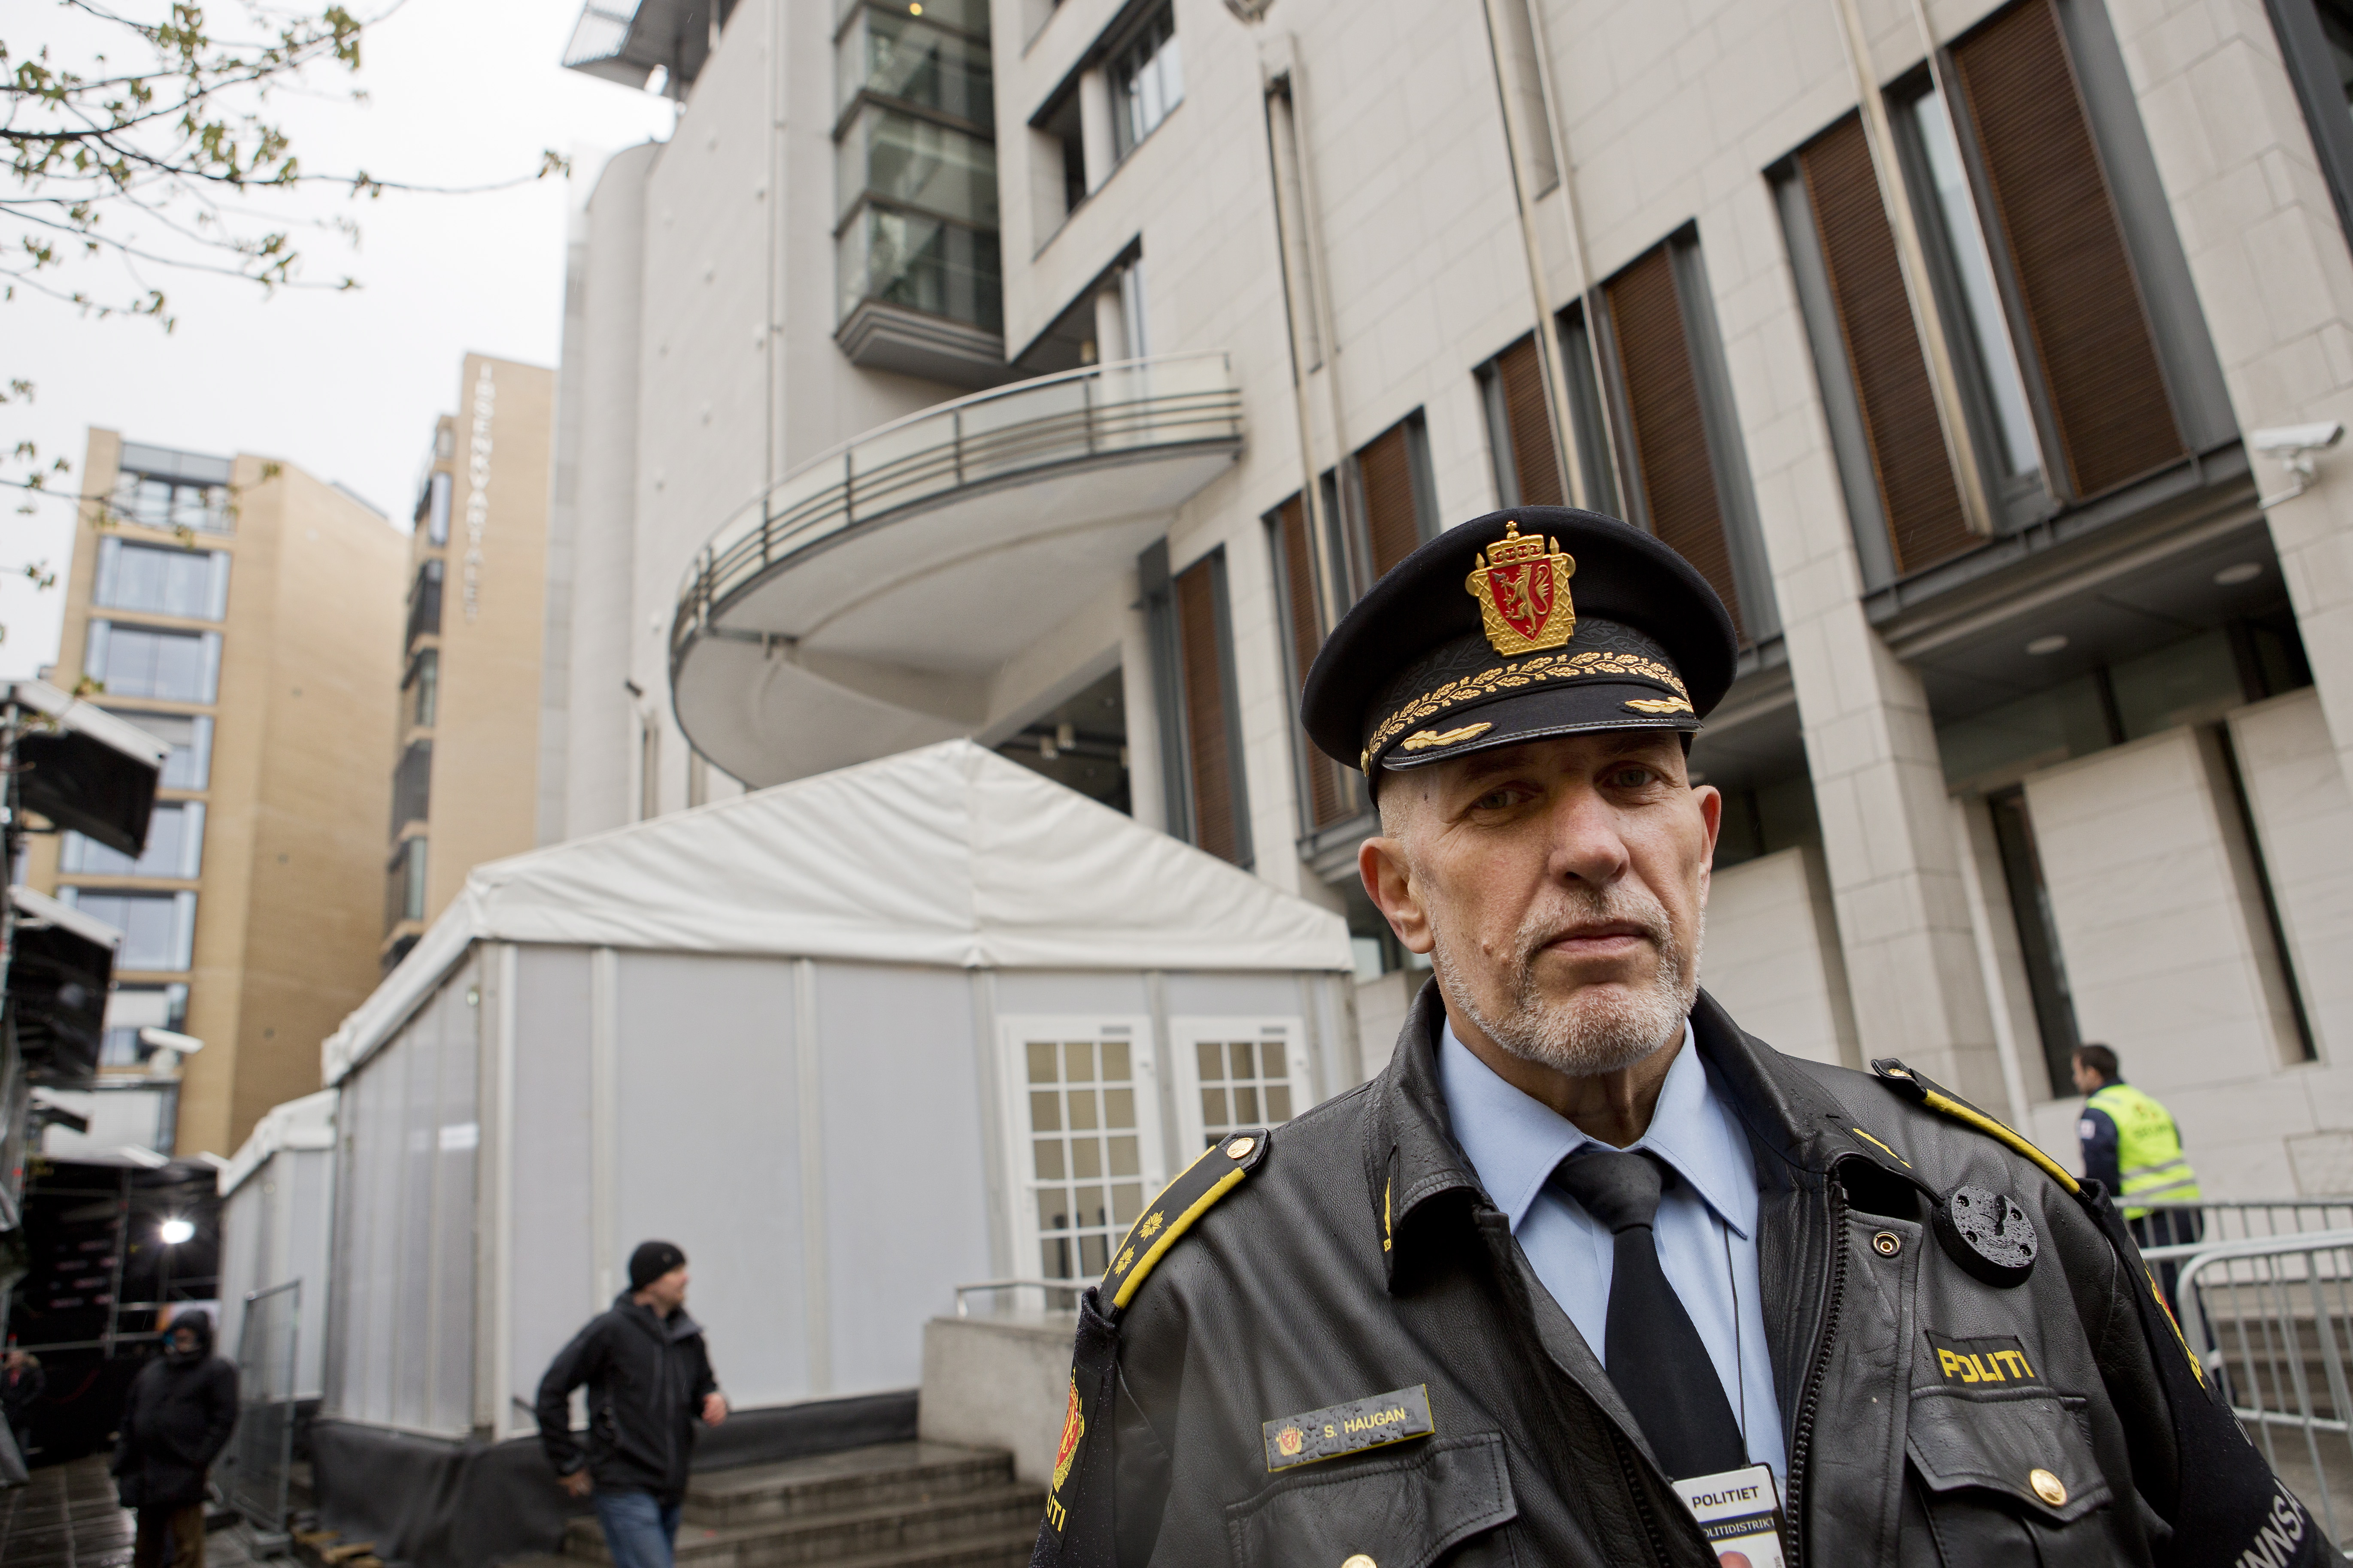 Norska polisens insatschef Snorre Haugan i Oslo politidistrikt säger till NTB att polisen har god kontroll över säkerheten kring tingsrätten.